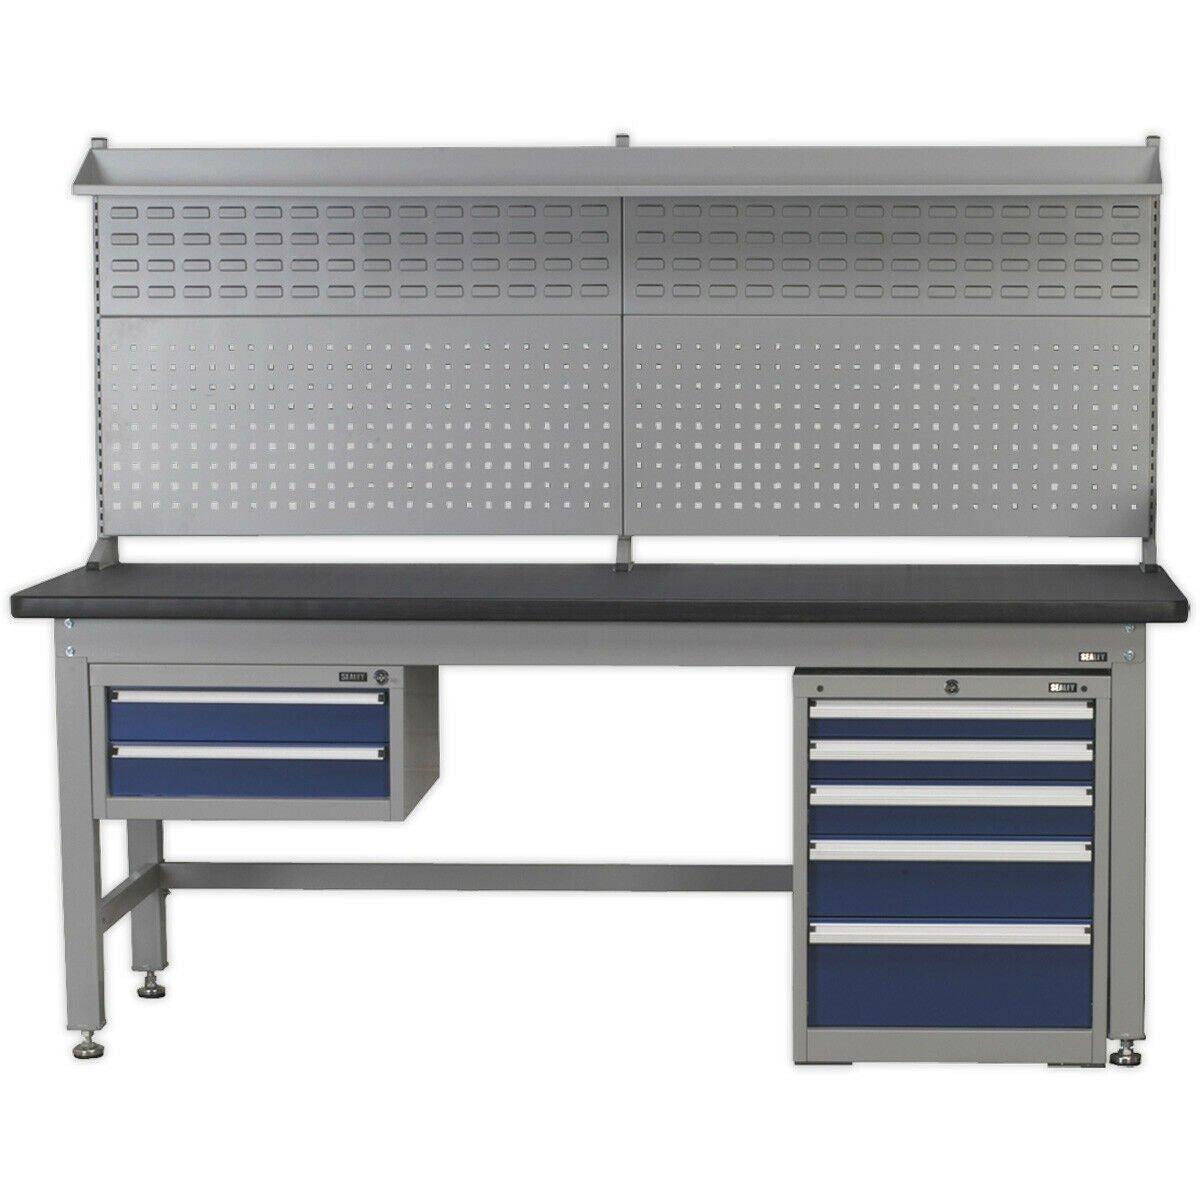 1.8m Complete Industrial Workstation & Cabinet Set - Back Panel Drawers Storage